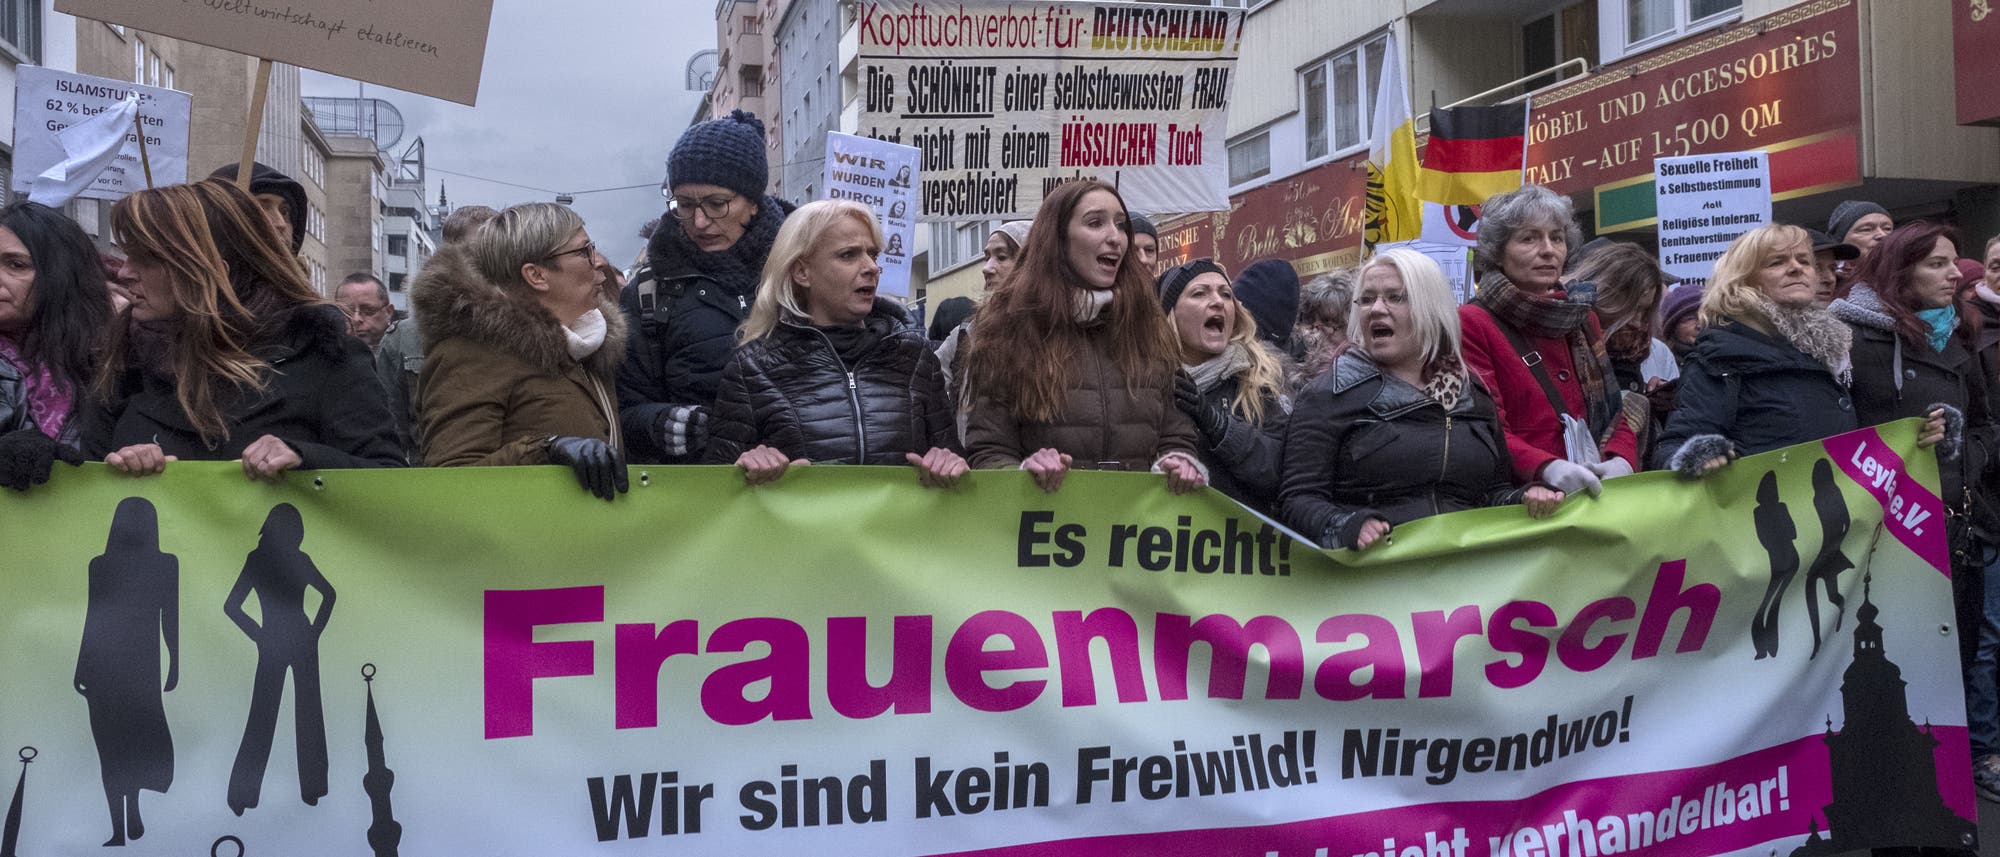 Teilnehmer am so genannten Frauenmarsch rechtspopulistischer Gruppierungen am 17.02.2018